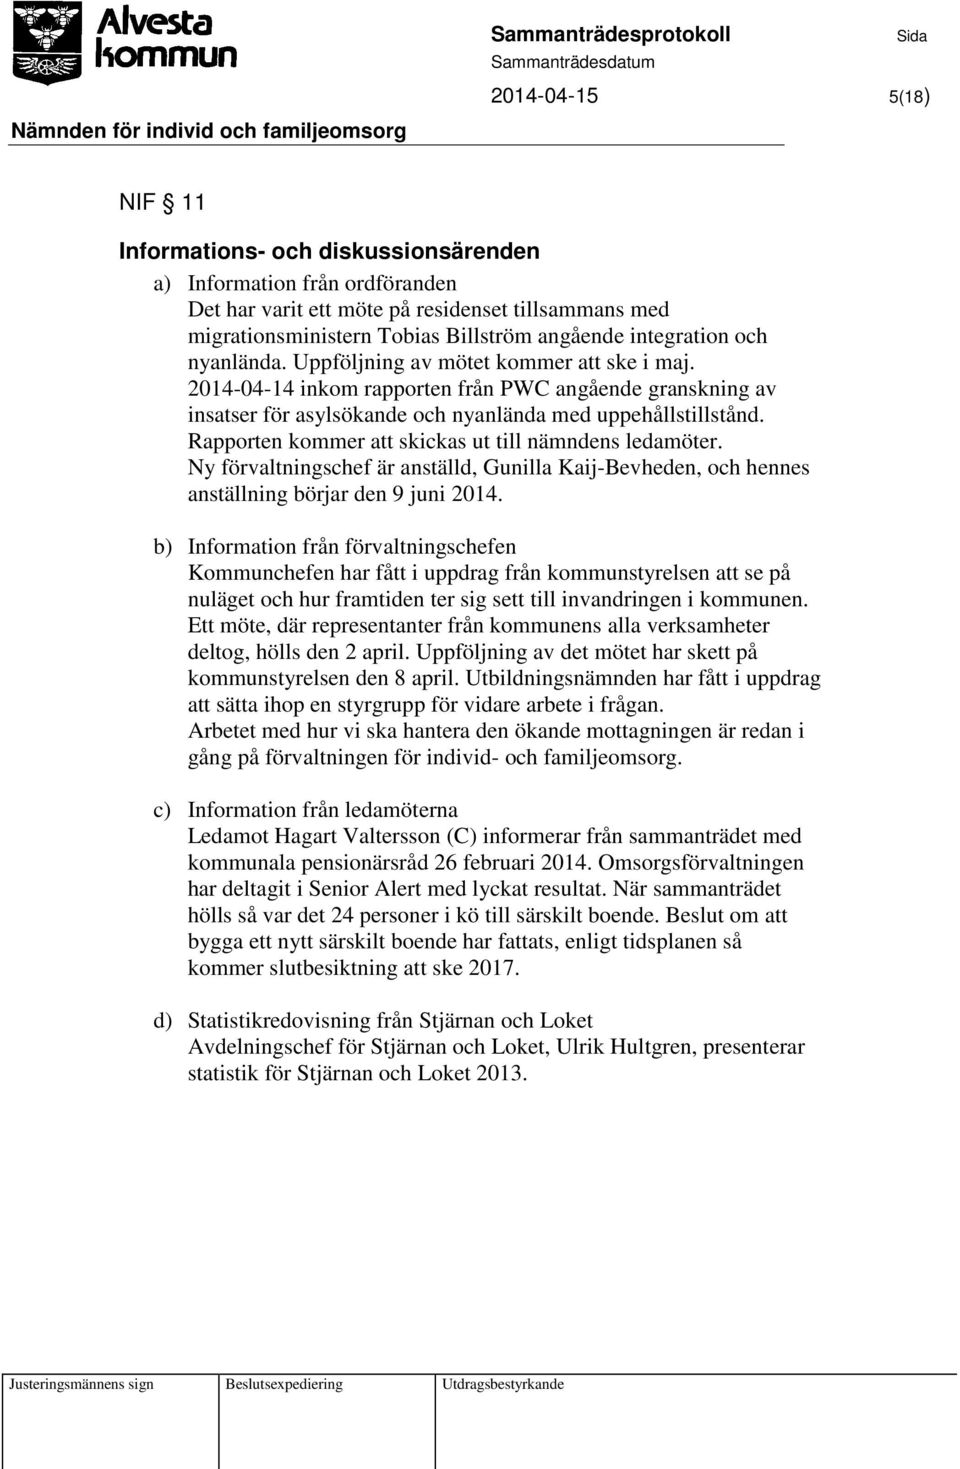 Rapporten kommer att skickas ut till nämndens ledamöter. Ny förvaltningschef är anställd, Gunilla Kaij-Bevheden, och hennes anställning börjar den 9 juni 2014.